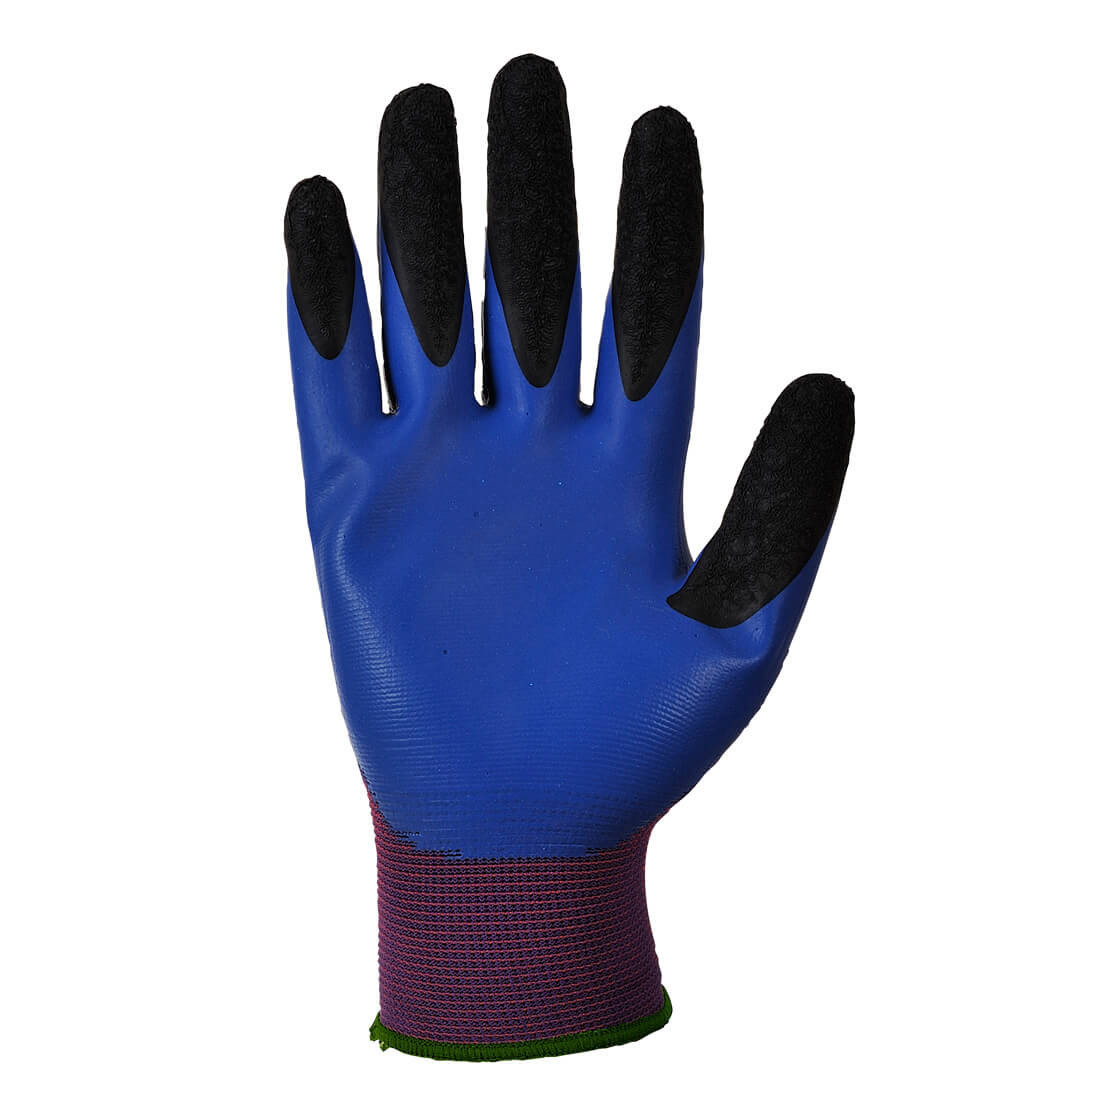 Duo-Flex gant - Les équipements de protection individuelle